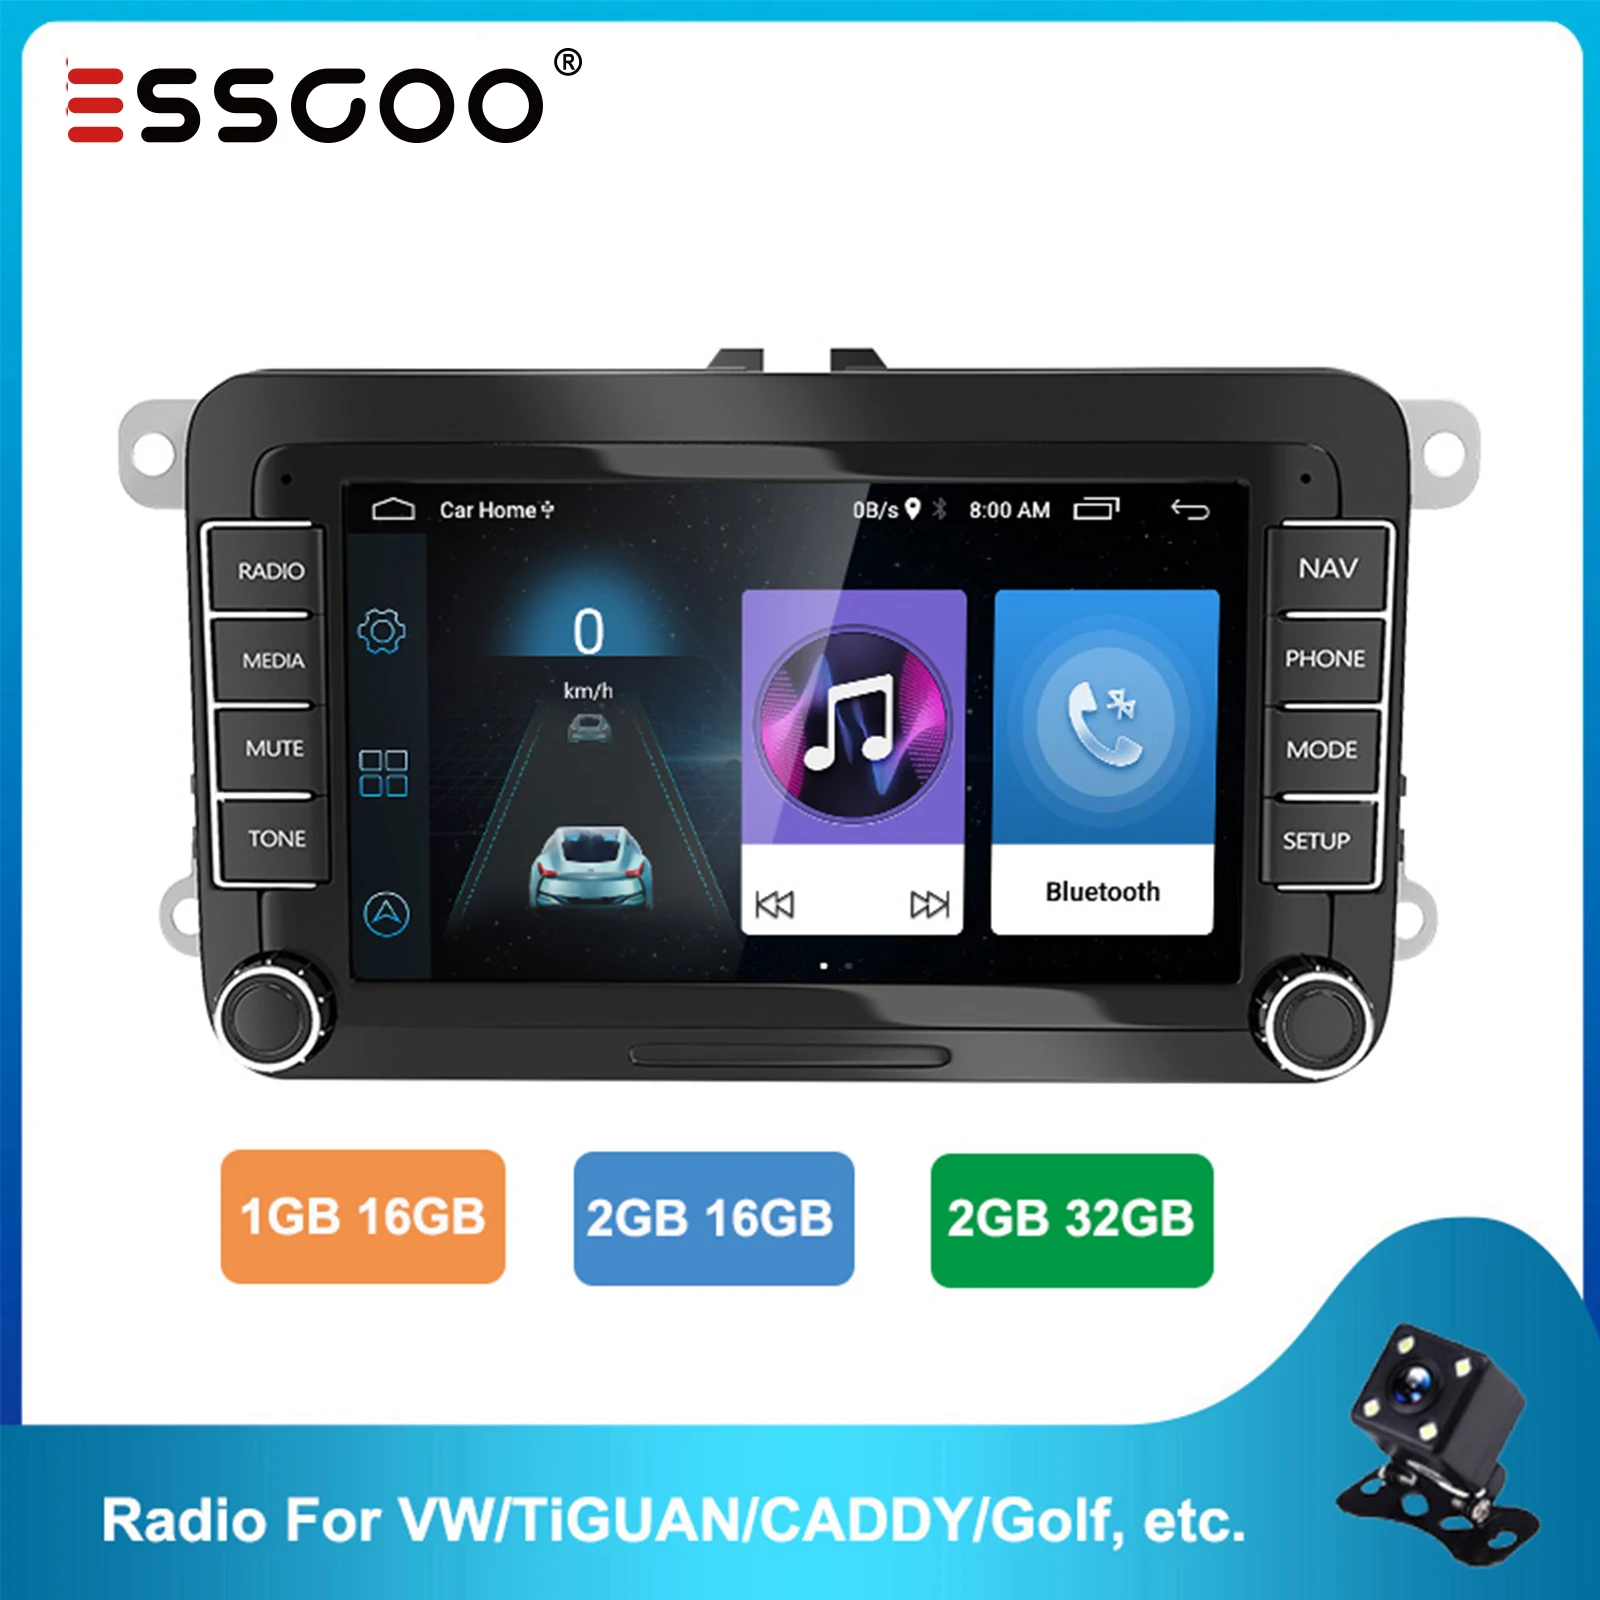 קנו אלקטרוניקה לרכב  ESSGOO 7'' Android 2 Din Car Radio Stereo FM RDS  Bluetooth WiFi GPS Navigation Autoradio For Volkswagen VW Caddy Golf Skoda  Seat